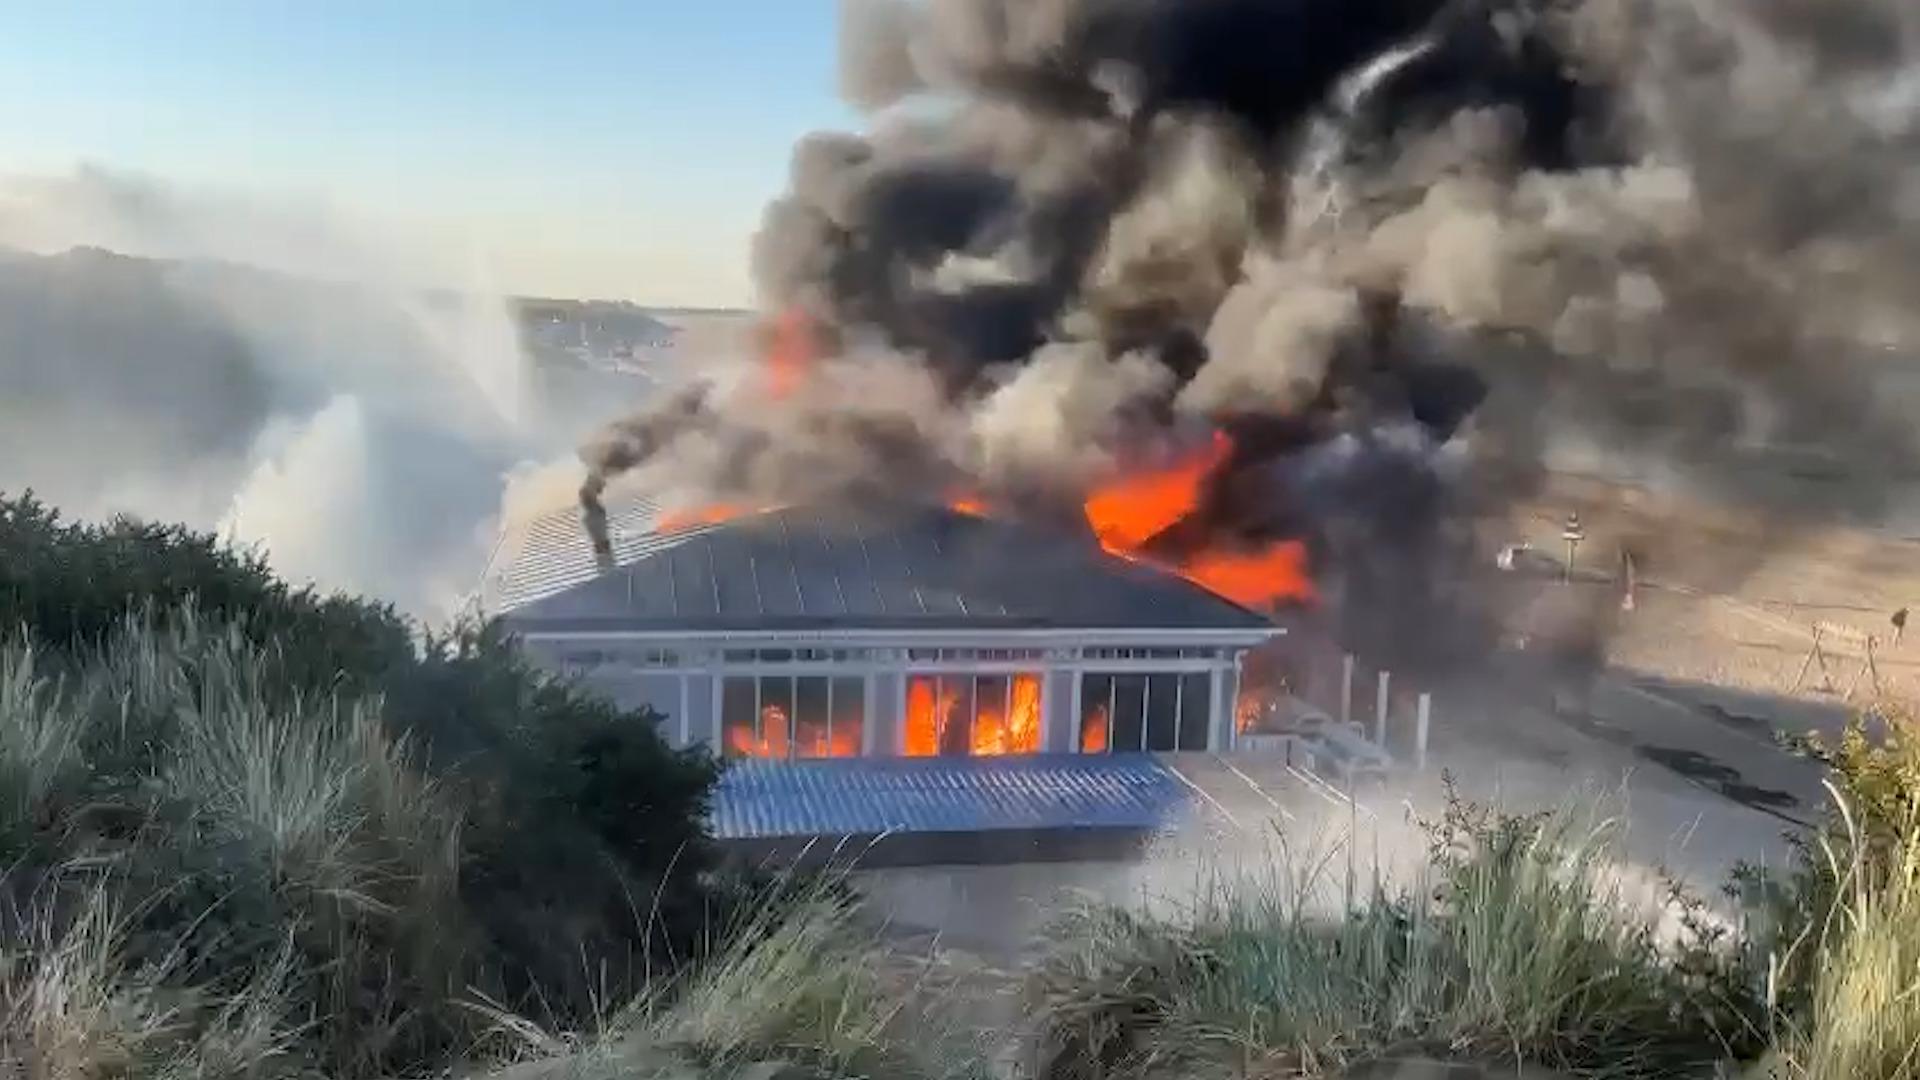 Vanaf daar puree hardop Beelden: vlammen slaan uit strandtent Rockanje | Video | Telegraaf.nl